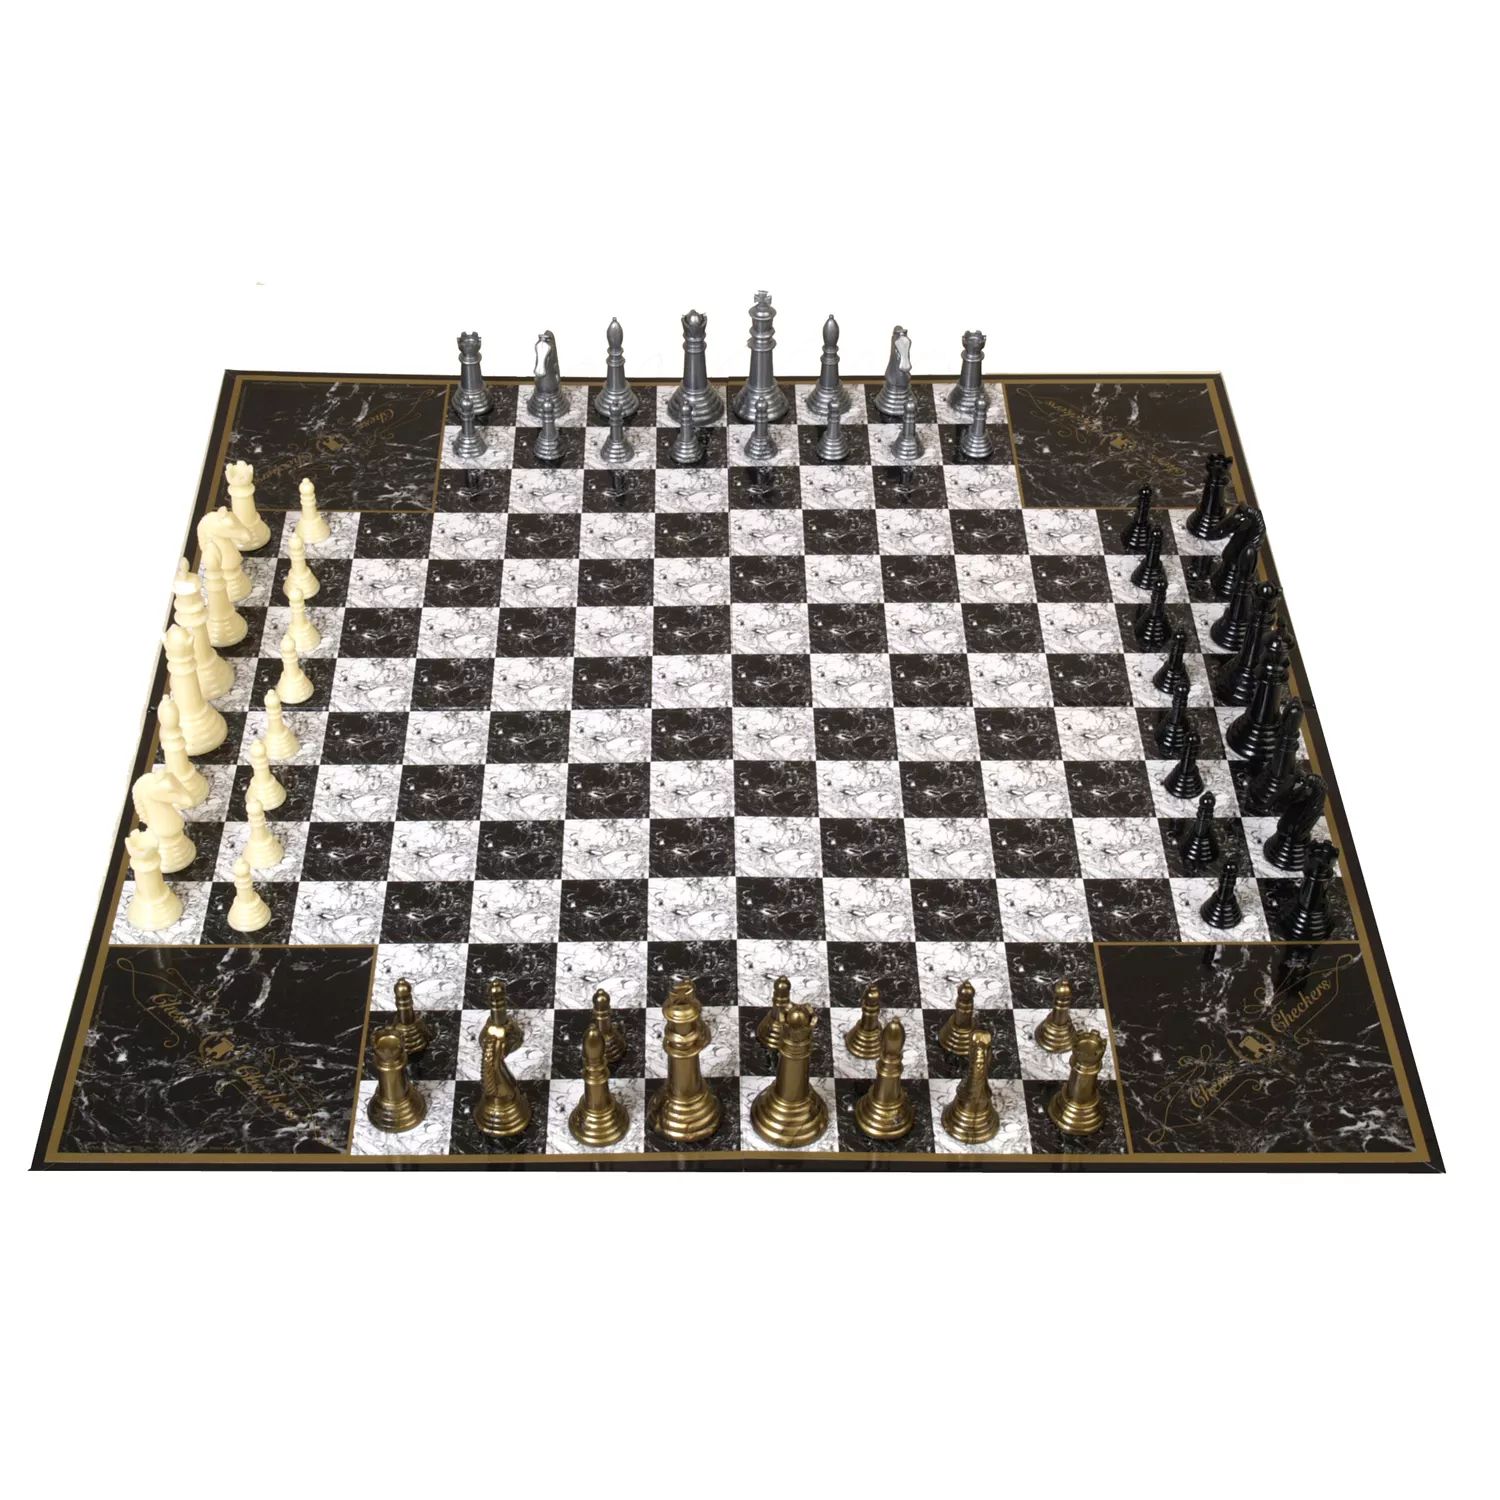 3 4 board. Шахматы 4 на 4. Шахматы с4 g6. Шахматы на 4х. Девятерные шахматы.